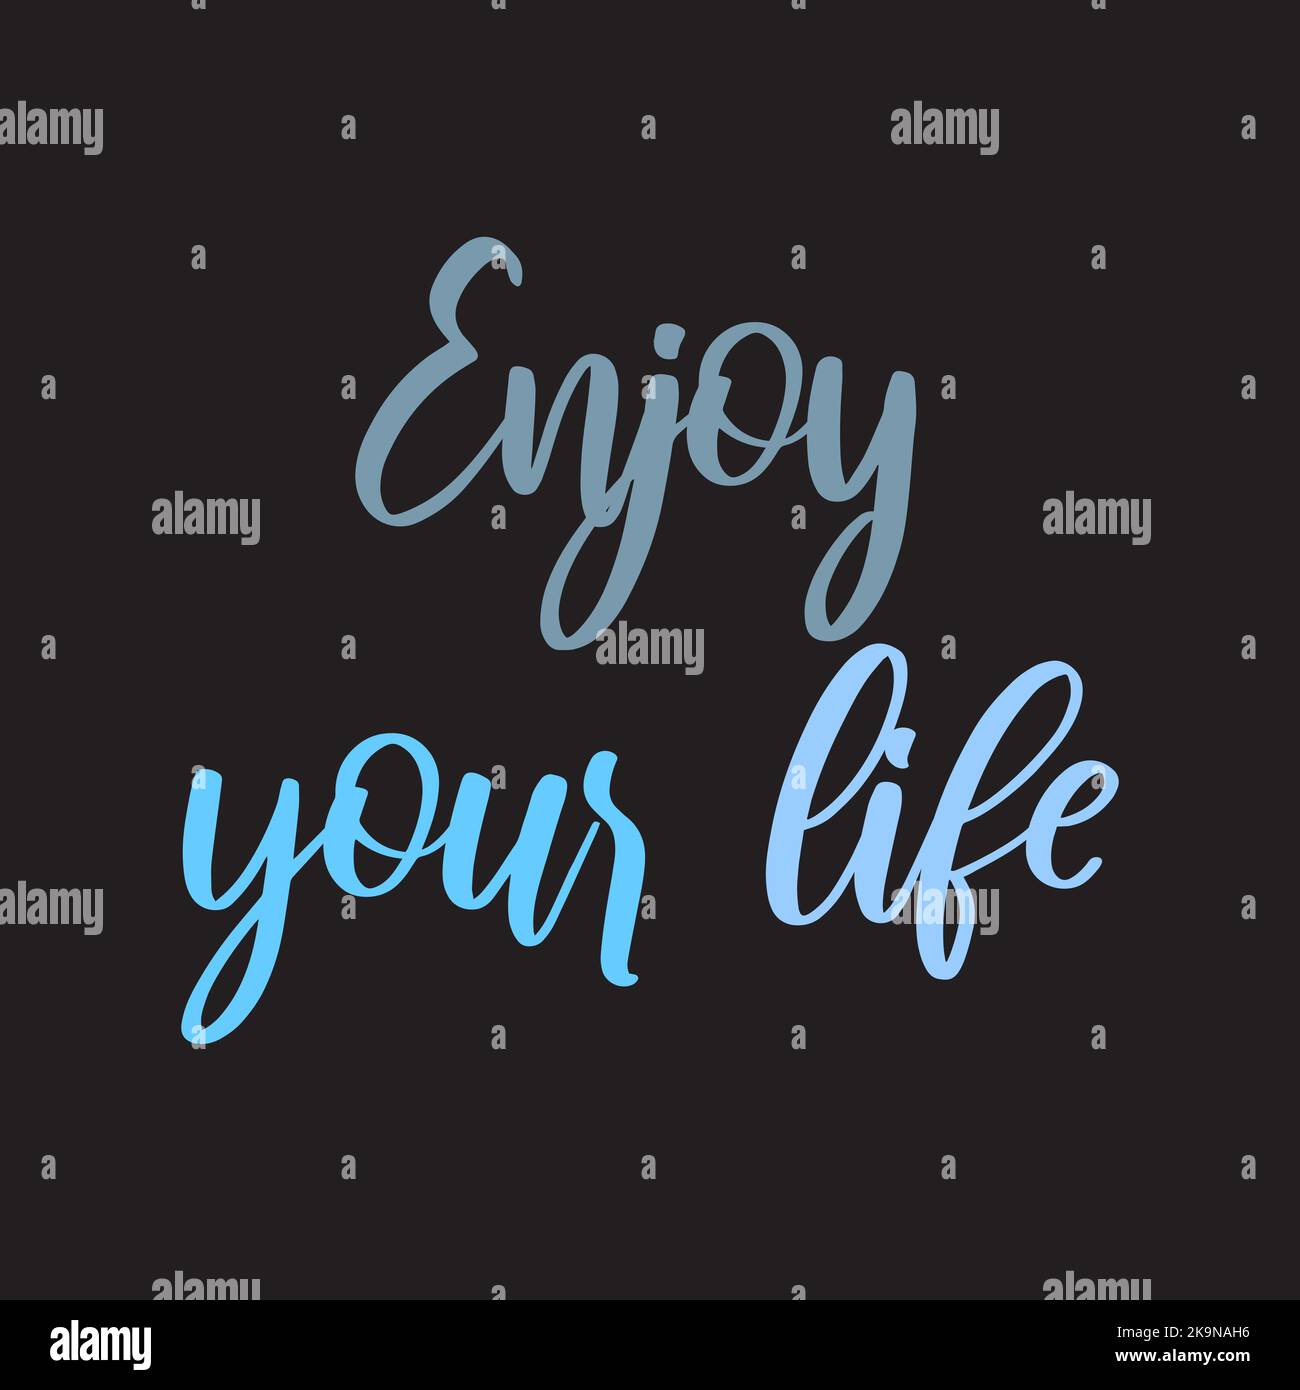 Divertente scheda o poster design con parole ispiratori godere la vostra vita. Citazione motivazionale. Illustrazione Vettoriale